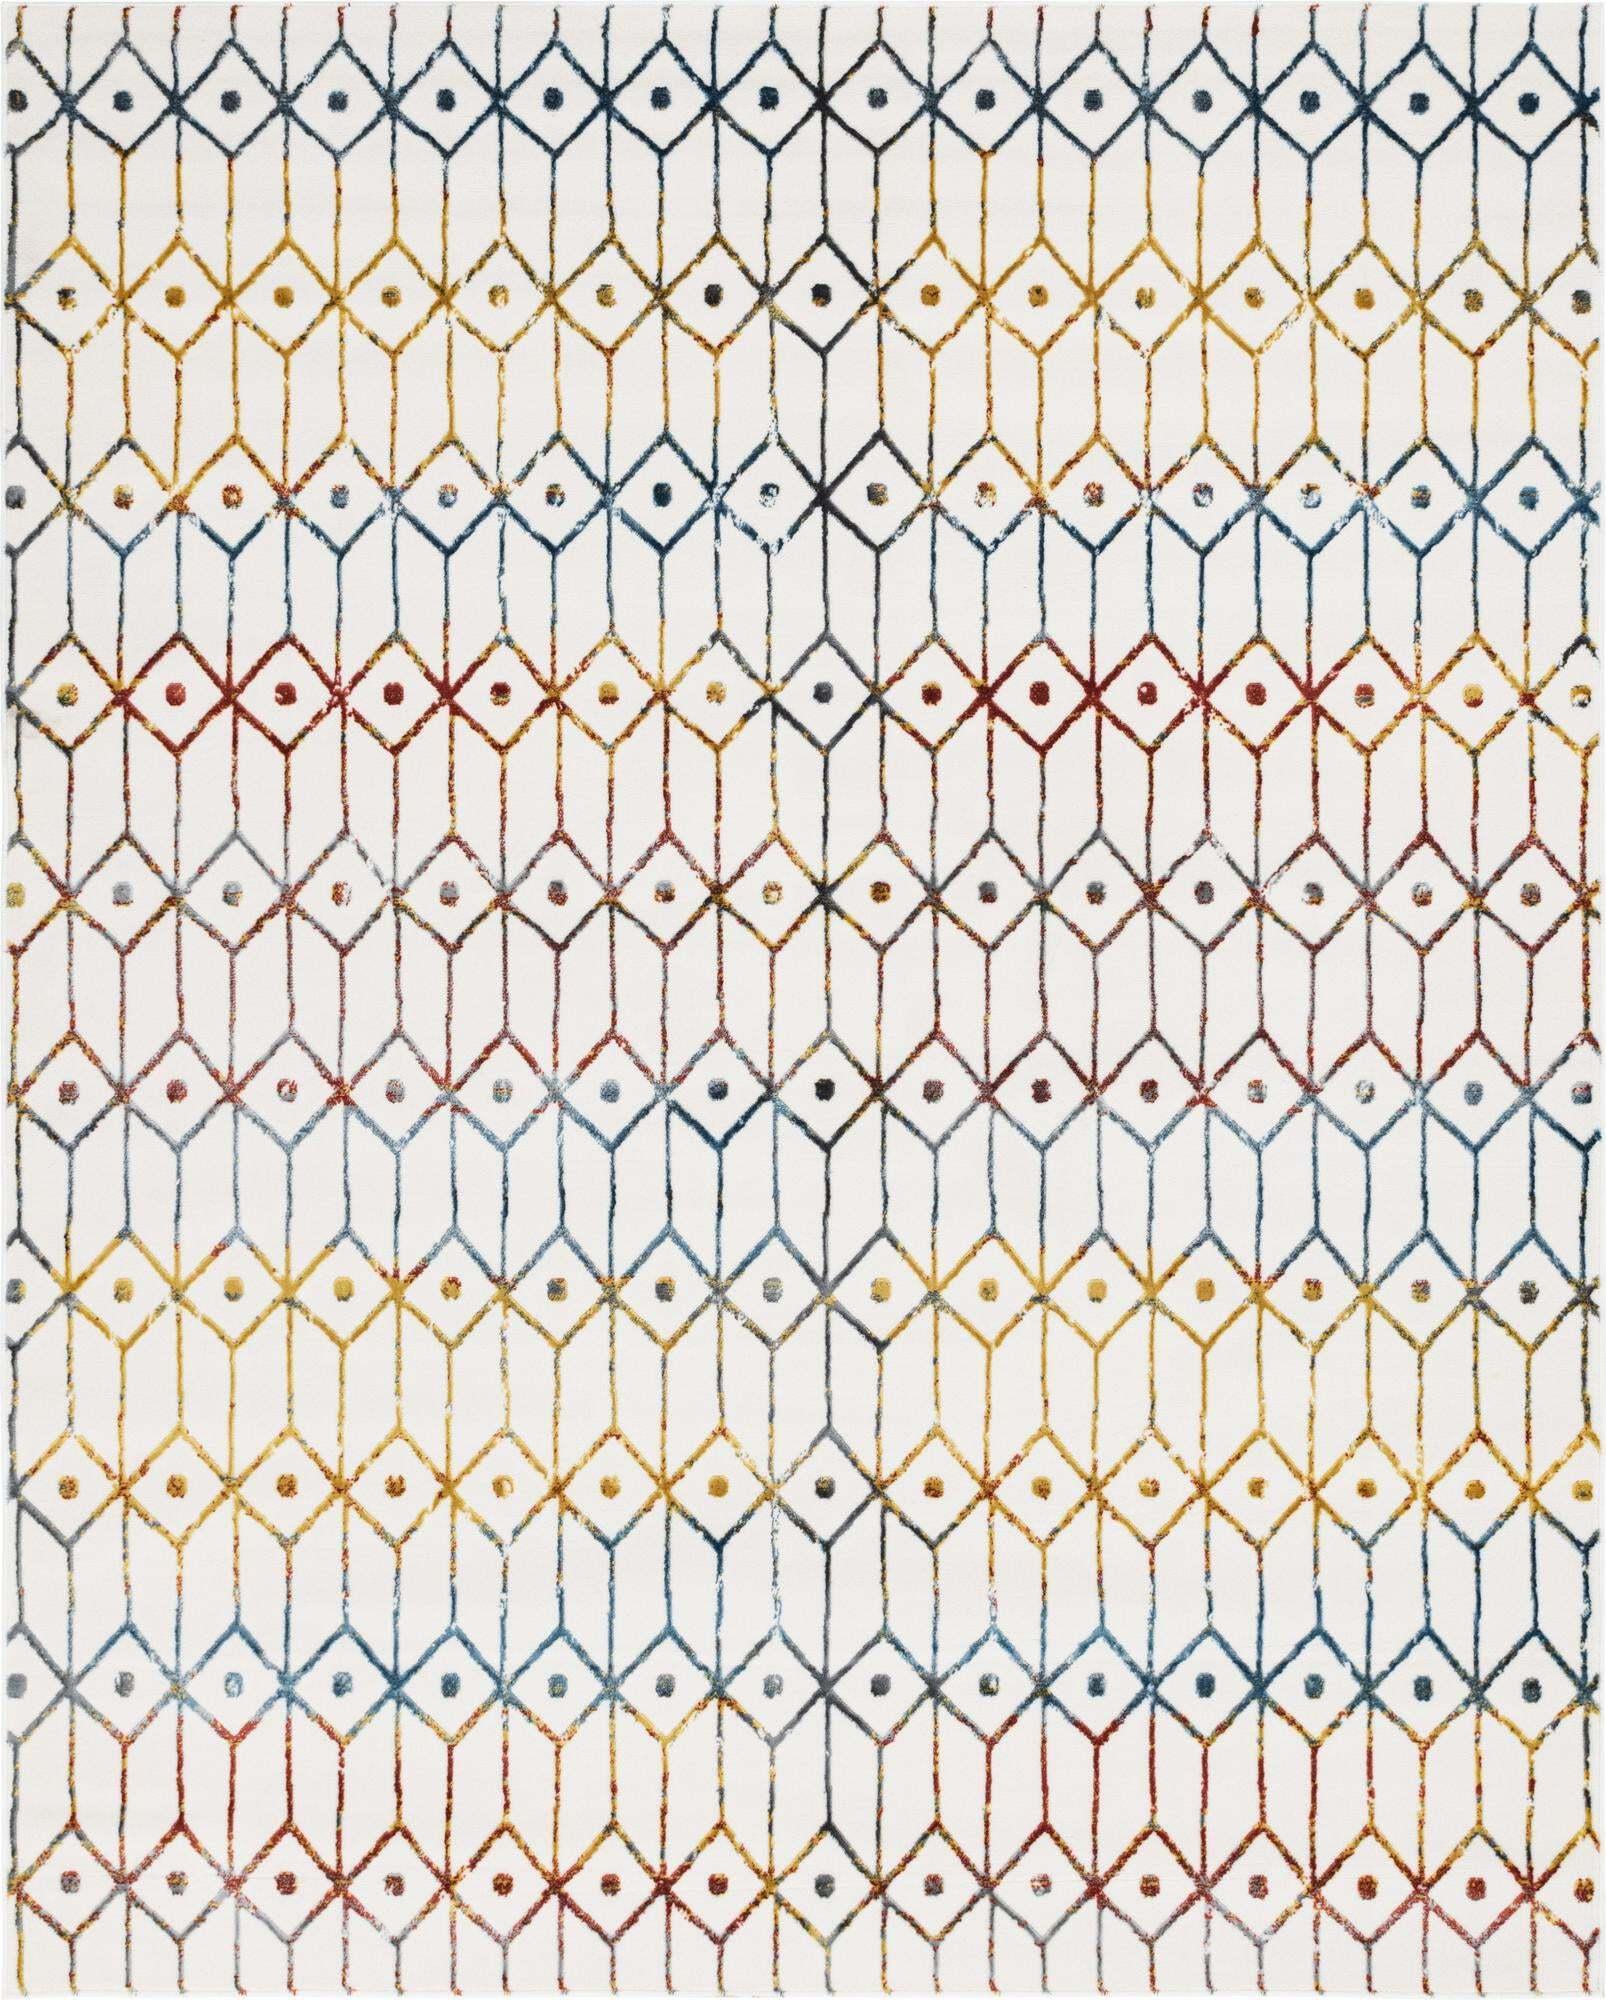 Unique Loom Indoor Rugs - Matrix Trellis Geometric Rectangular 8x10 Rug Ivory & Blue